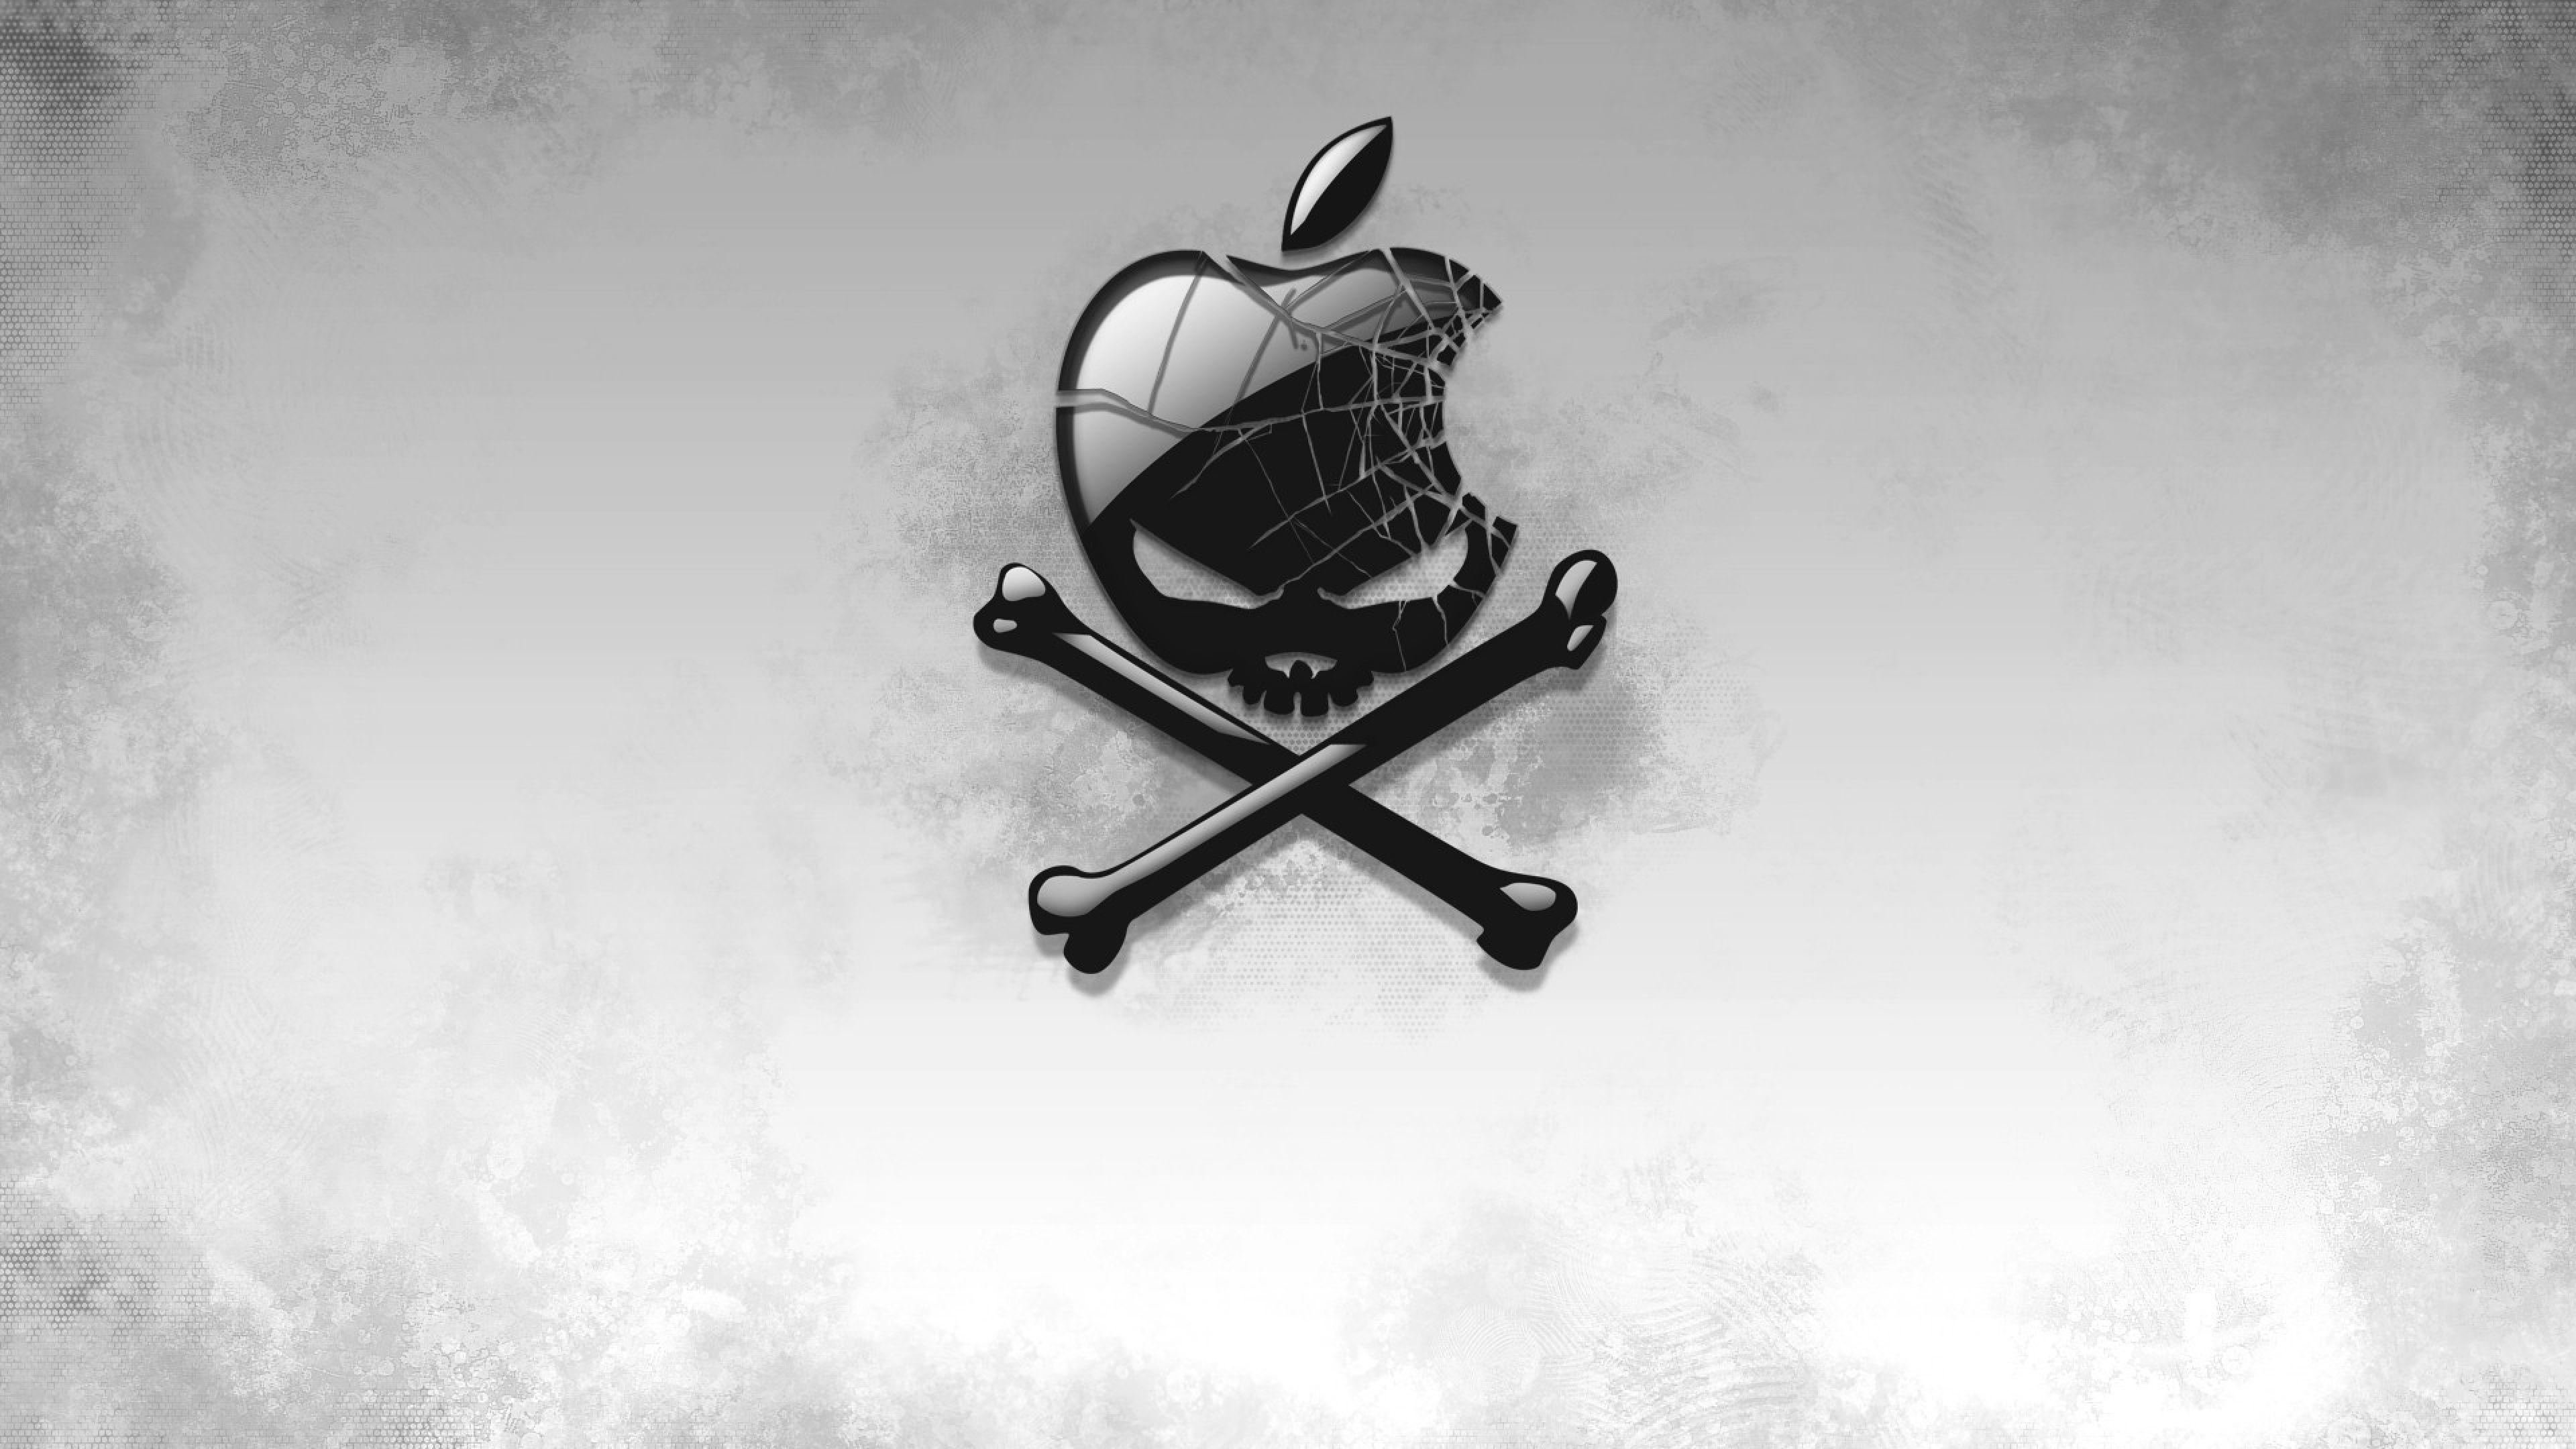 Black Apple Skull, HD Artist, 4k Wallpaper, Image, Background